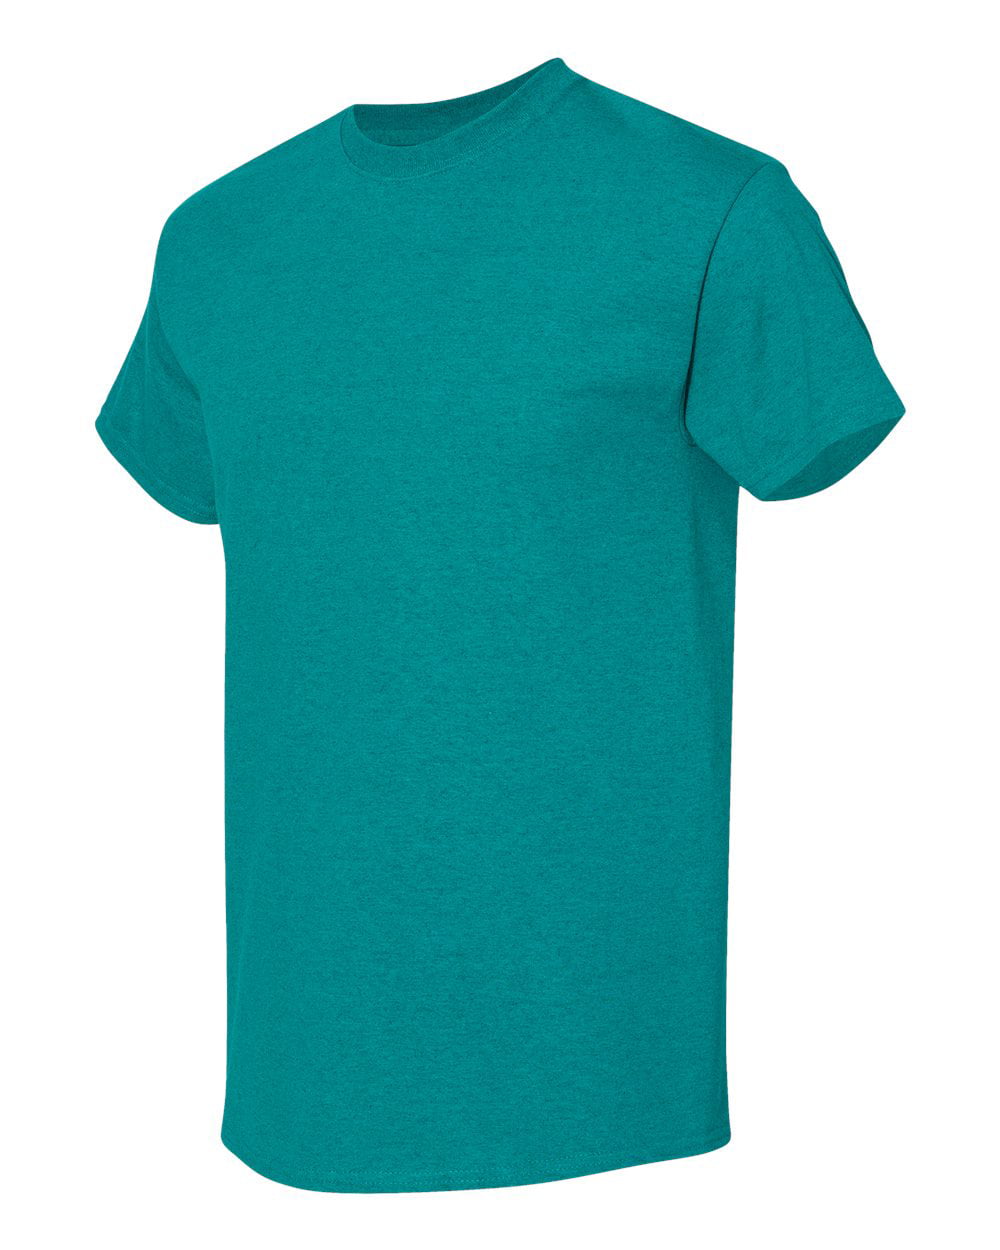 Ongeëvenaard verder Geit Men Heavy Cotton Multi Colors T-Shirt Color Antique Jade Dome Medium Size -  Walmart.com